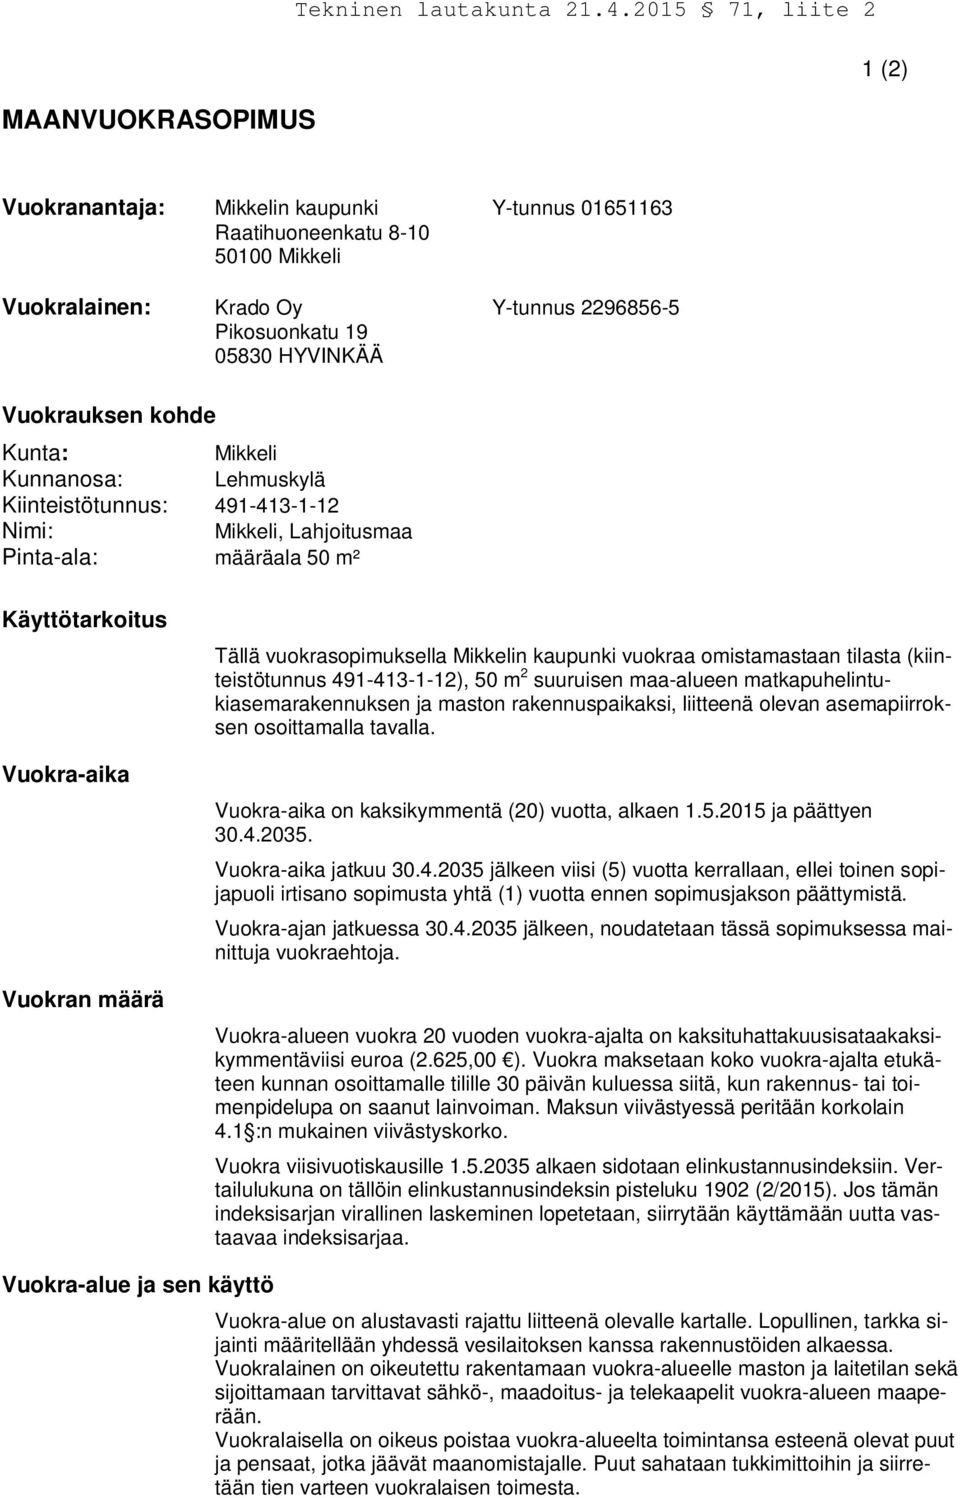 Mikkelin kaupunki vuokraa omistamastaan tilasta (kiinteistötunnus 491-413-1-12), 50 m 2 suuruisen maa-alueen matkapuhelintukiasemarakennuksen ja maston rakennuspaikaksi, liitteenä olevan